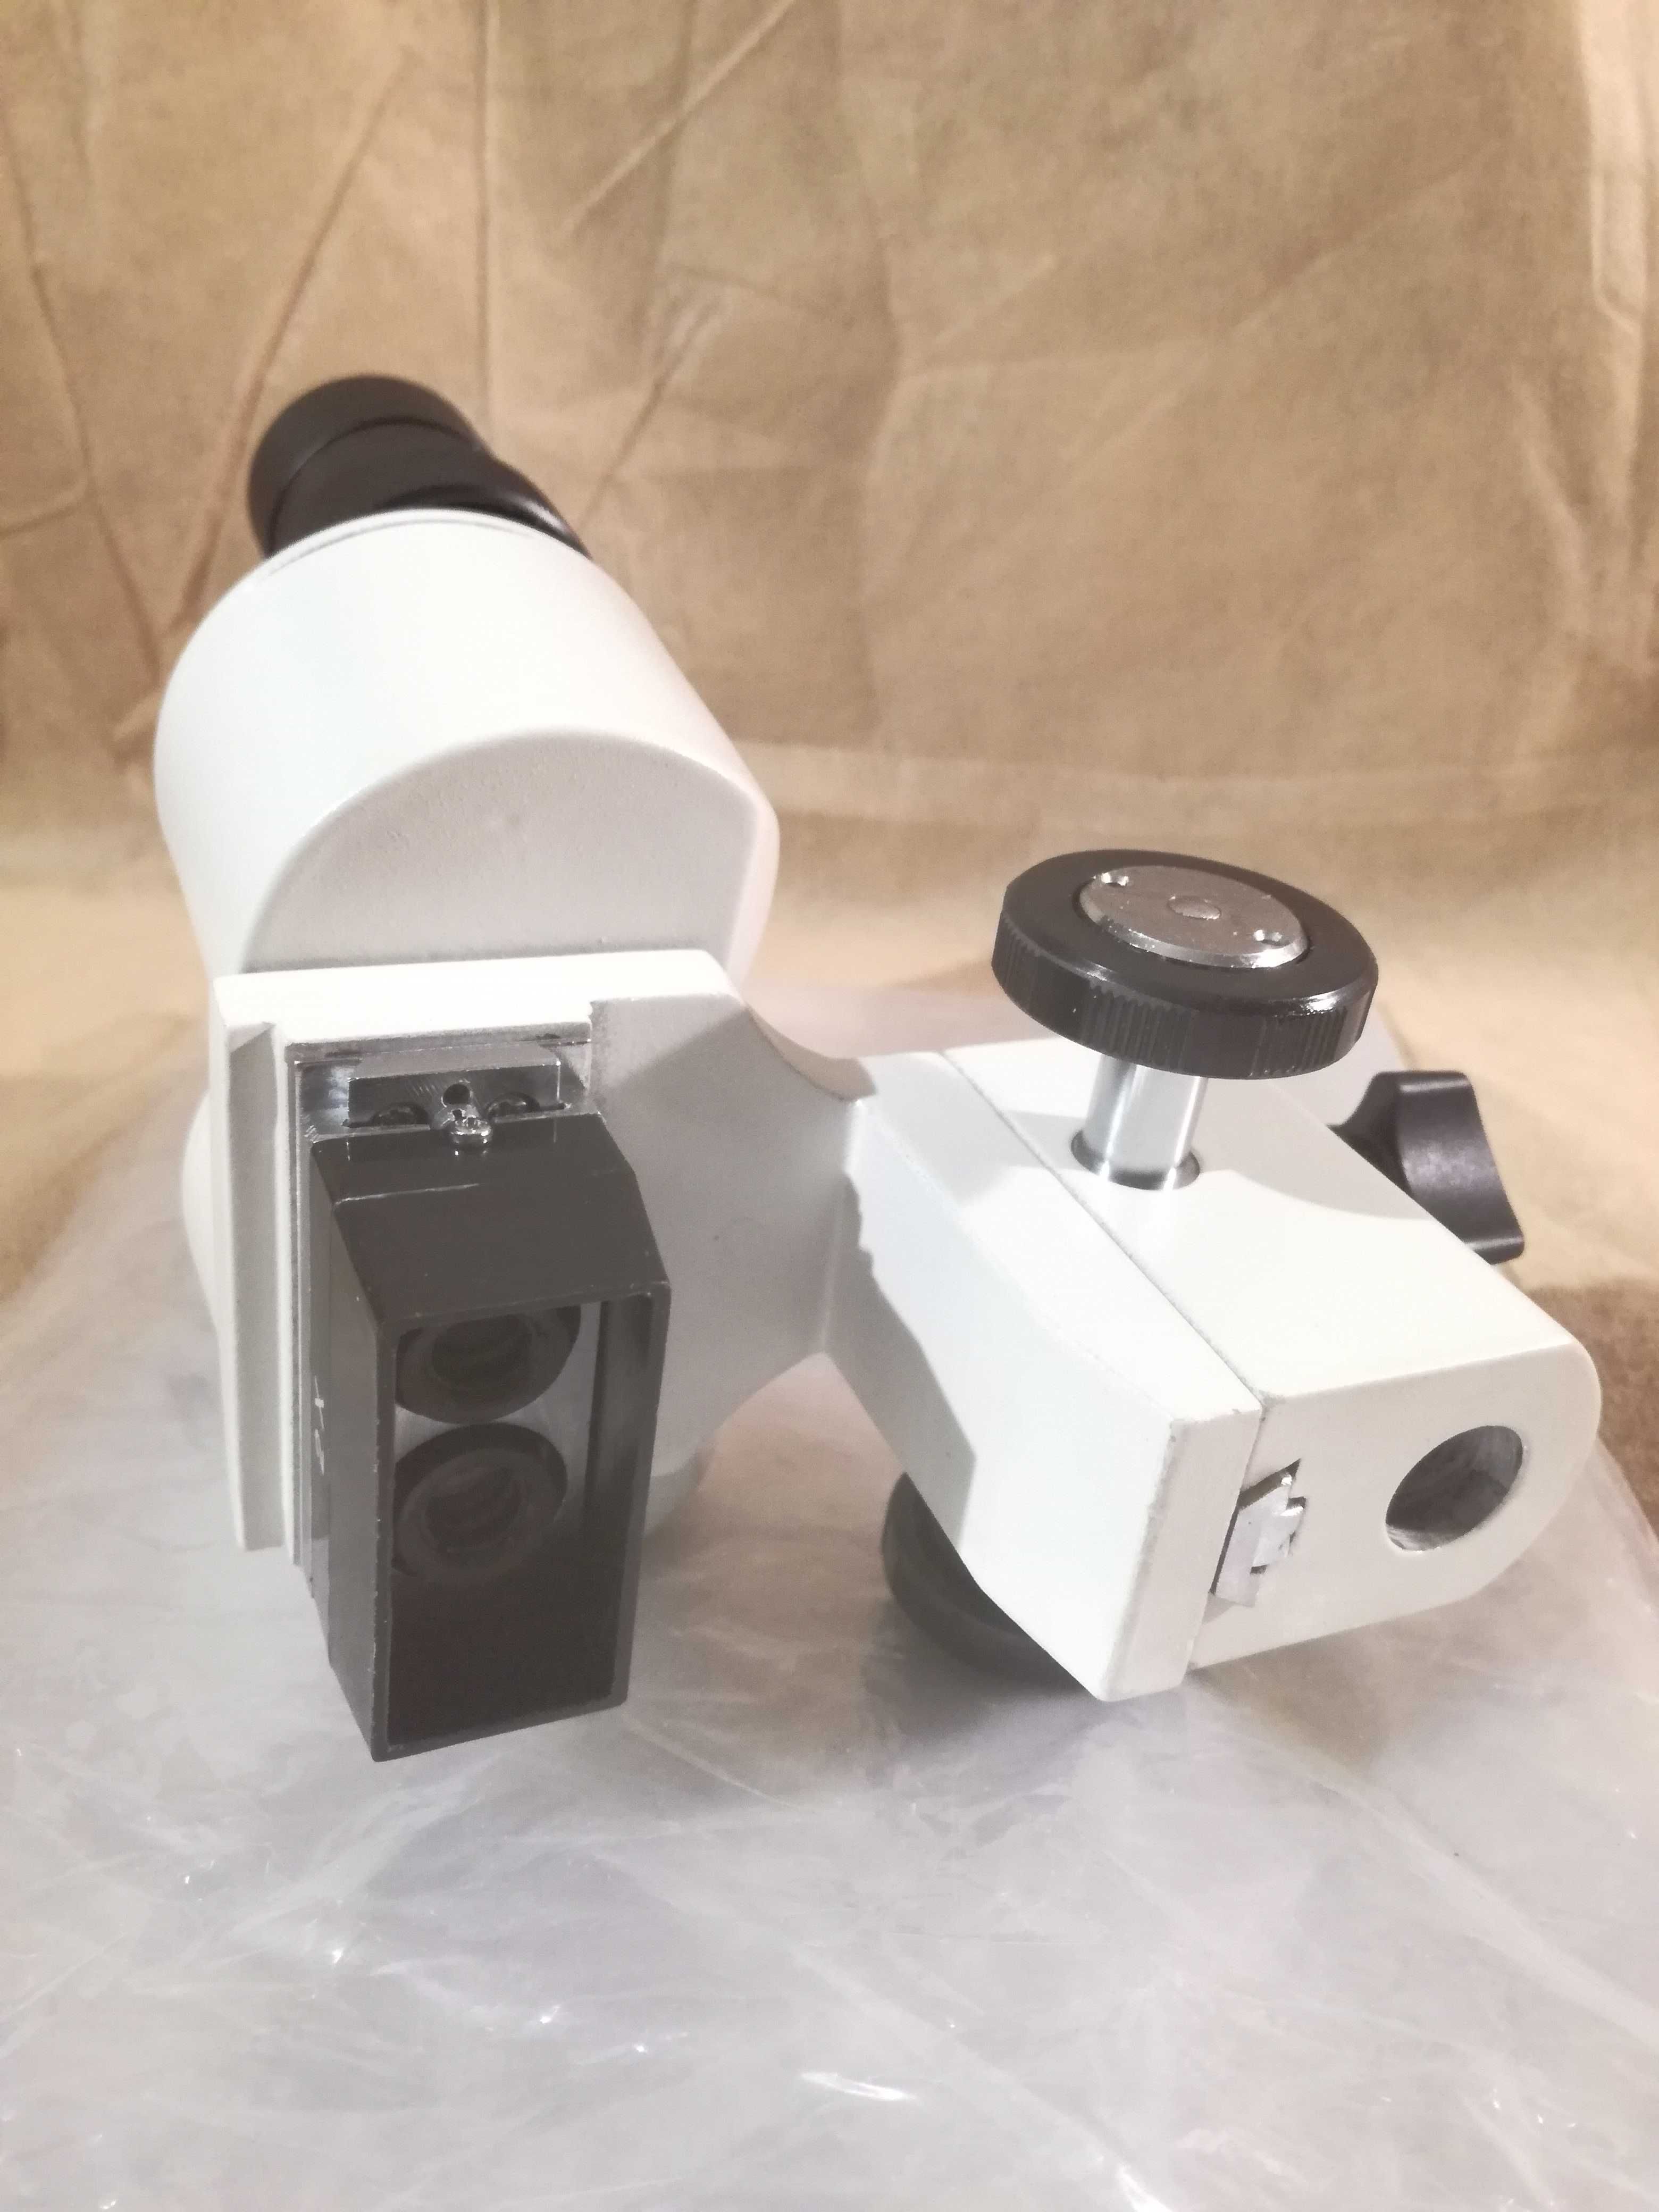 Mikroskop stereoskopowy 20x serwis GSM lutowanie elektronika pzo mbc